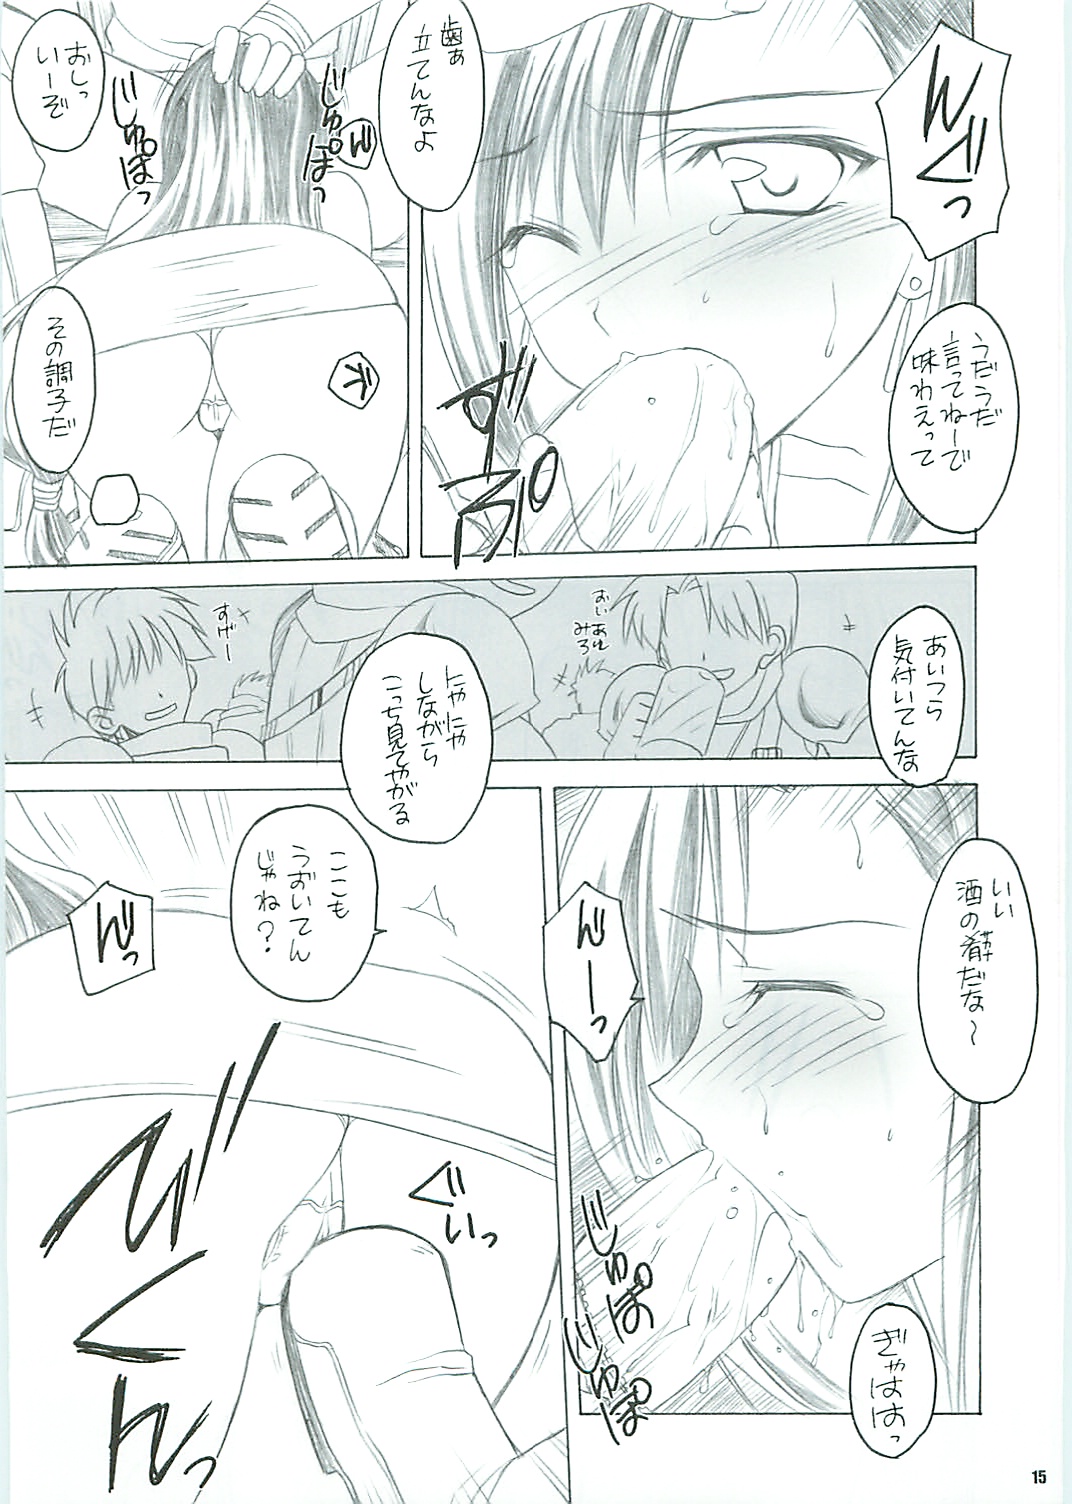 [Yasyokutei (Akazaki Yasuma)] Tifa no Oyashoku. 2 (Final Fantasy VII) page 17 full